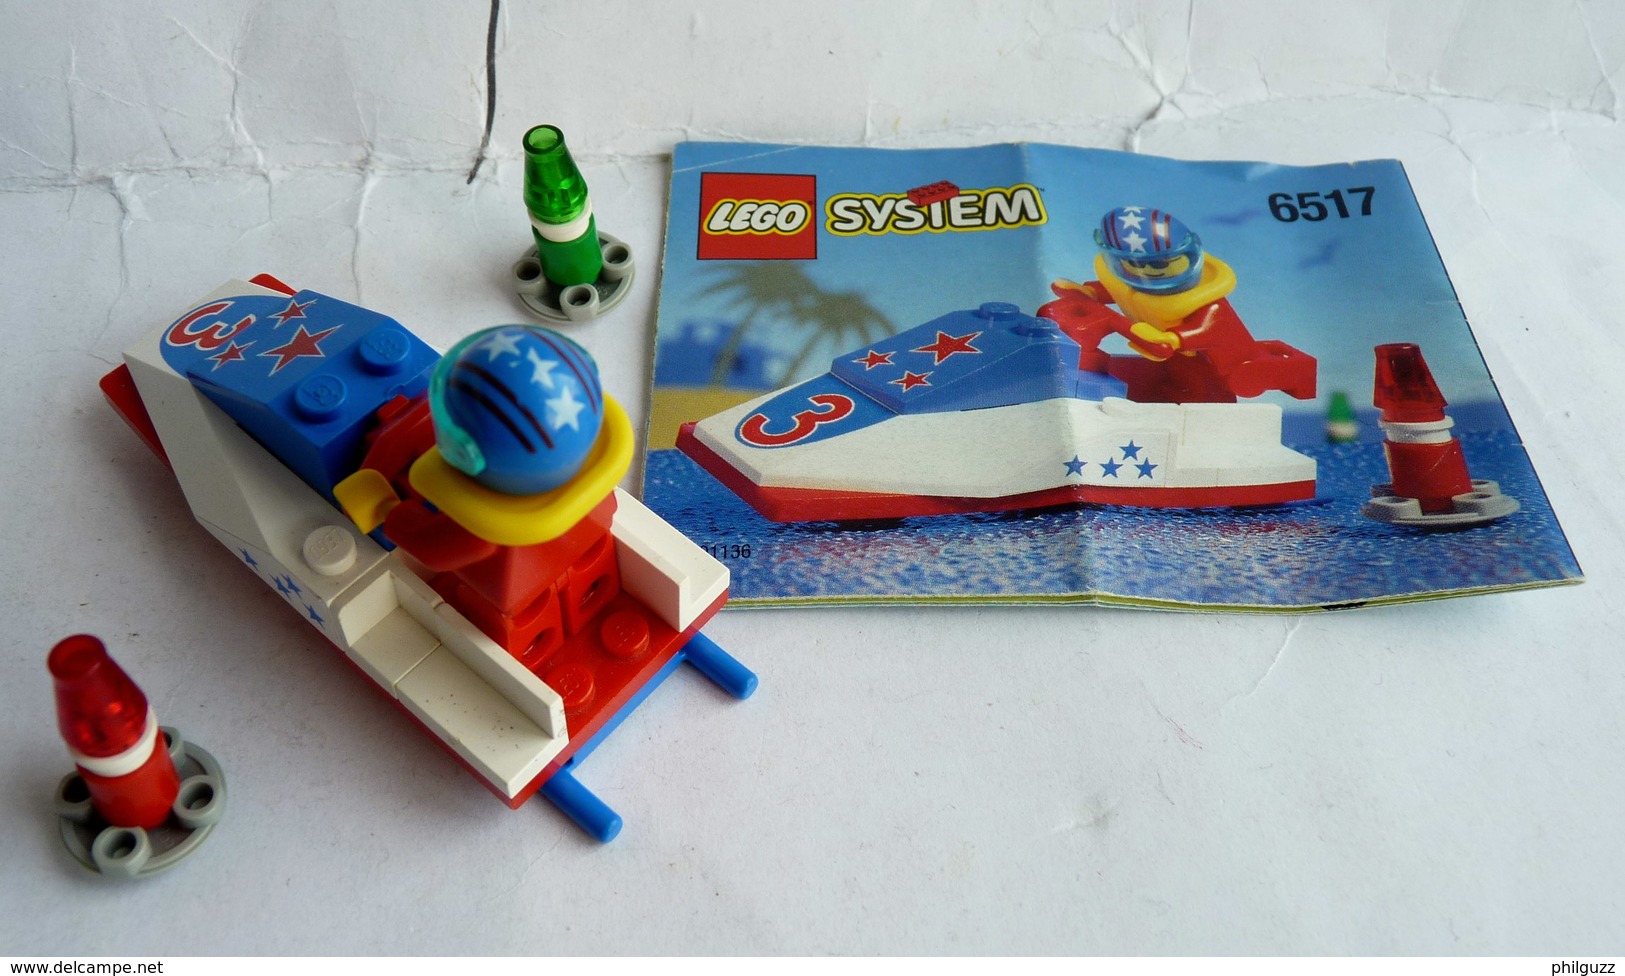 FIGURINE LEGO 6517 WATER JET SKI Avec Notice 1 1996 - MINI FIGURE Légo - Lego System